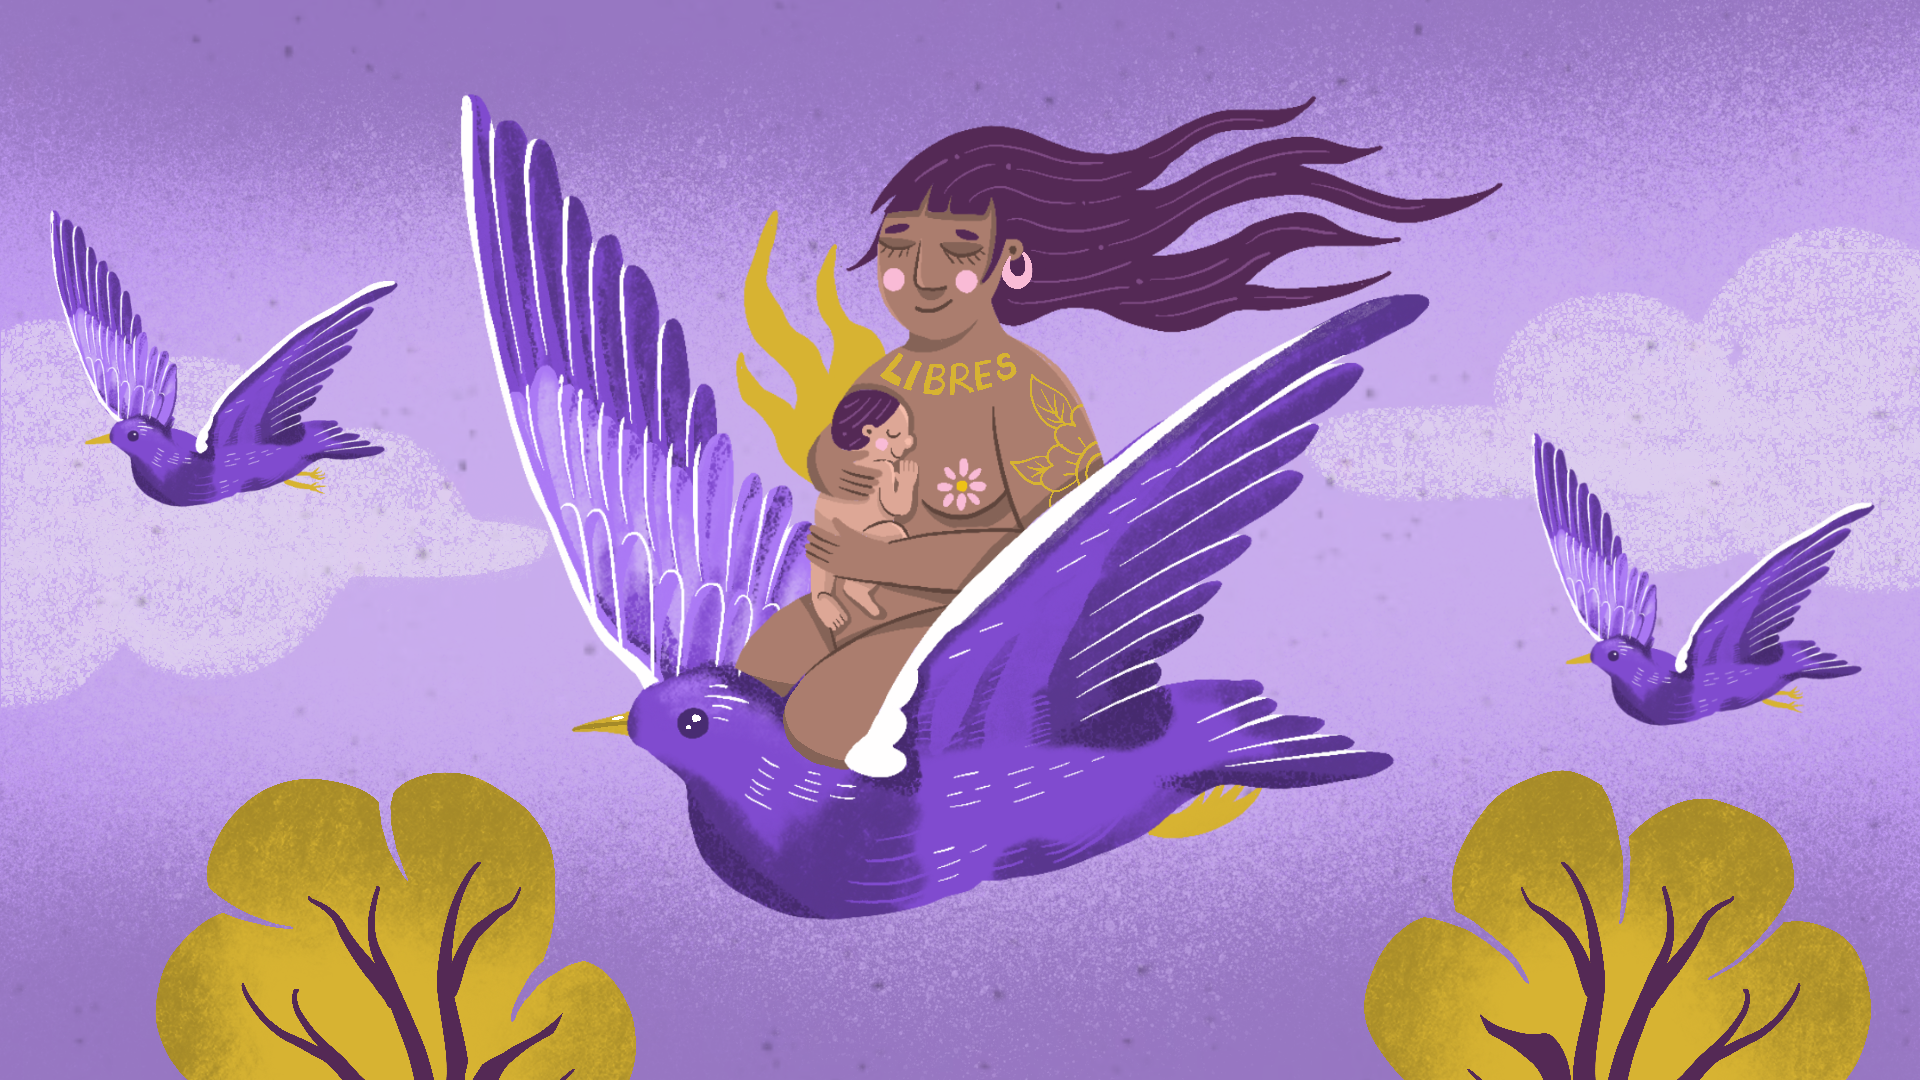 “Malasmadres”, rebeldes que descubren otras formas de la maternidad